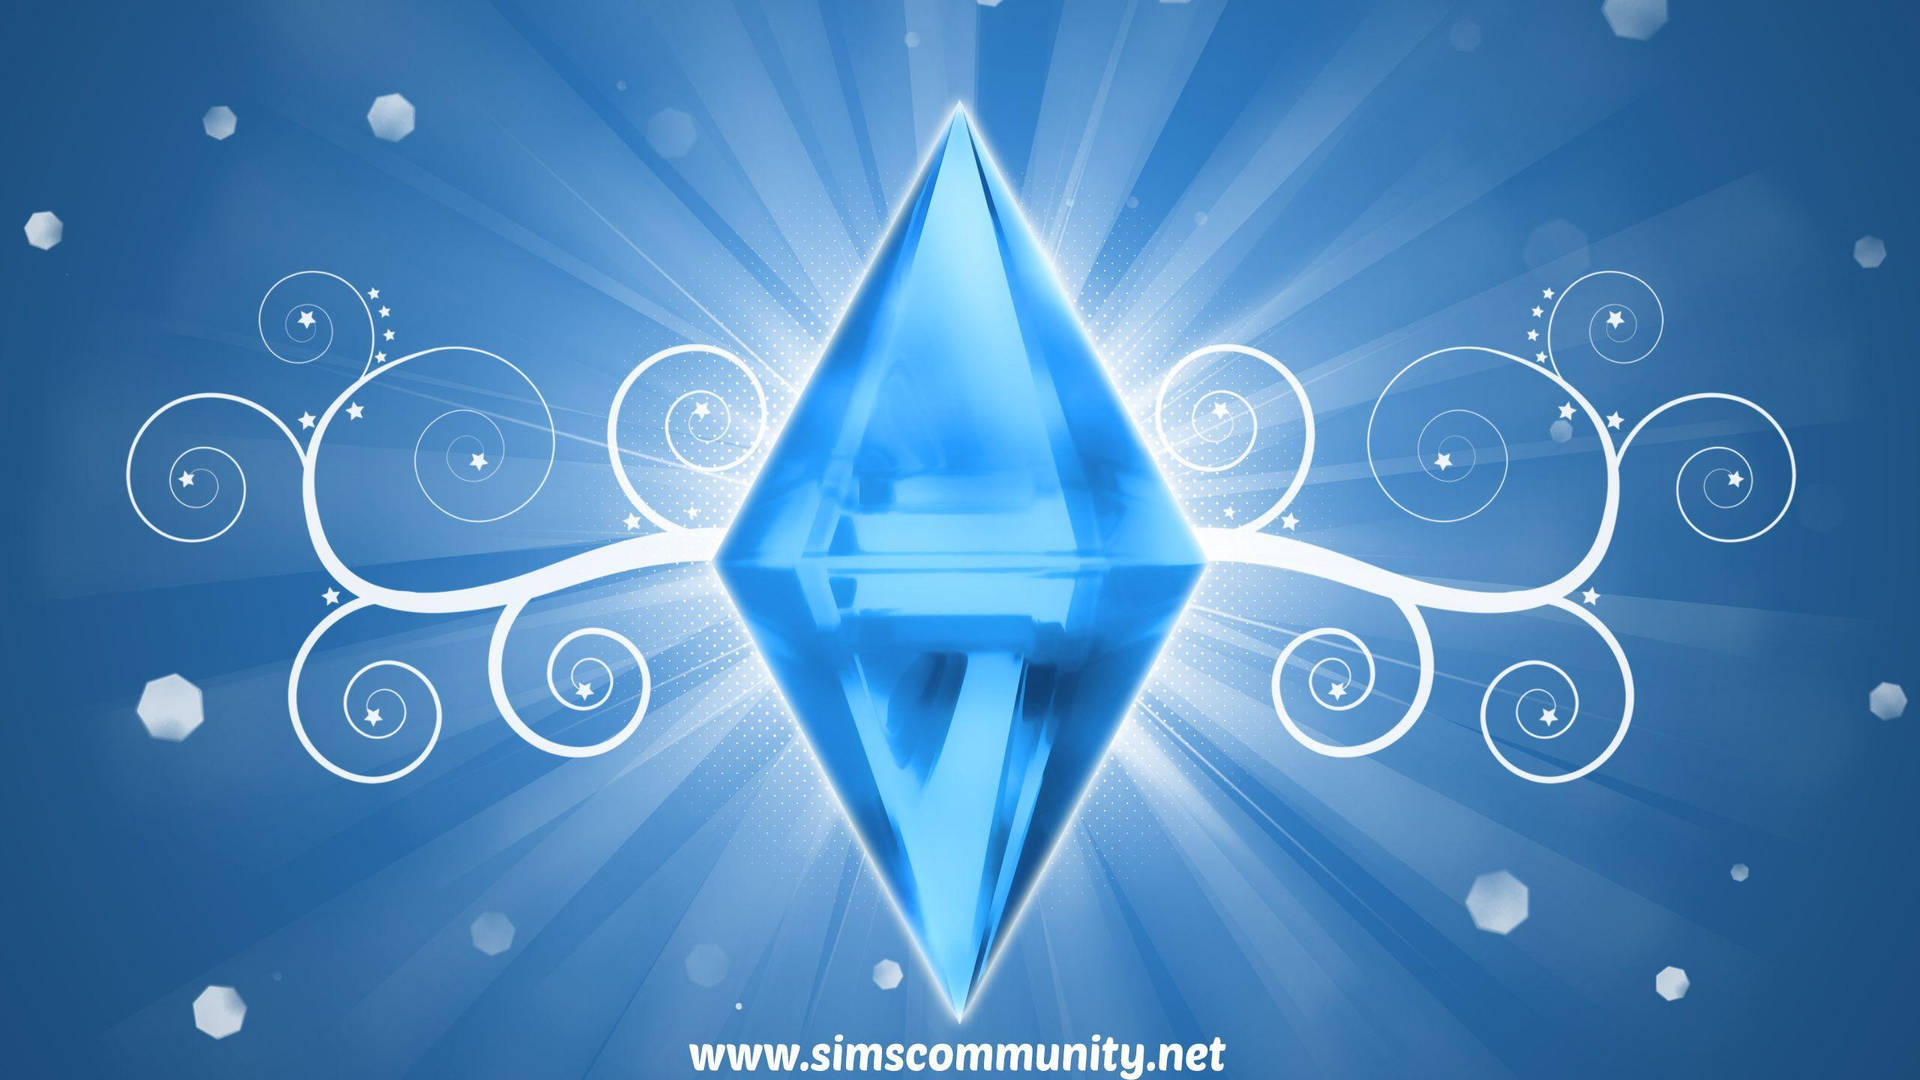 Hình nền The Sims Blue Diamond với những hình ảnh tuyệt đẹp sẽ khiến bạn phấn khích. Đội ngũ thiết kế của The Sims đã tạo ra một bức tranh nghệ thuật số với màu xanh ngọc bí ẩn và tinh túy, khiến bạn không thể nào rời mắt.